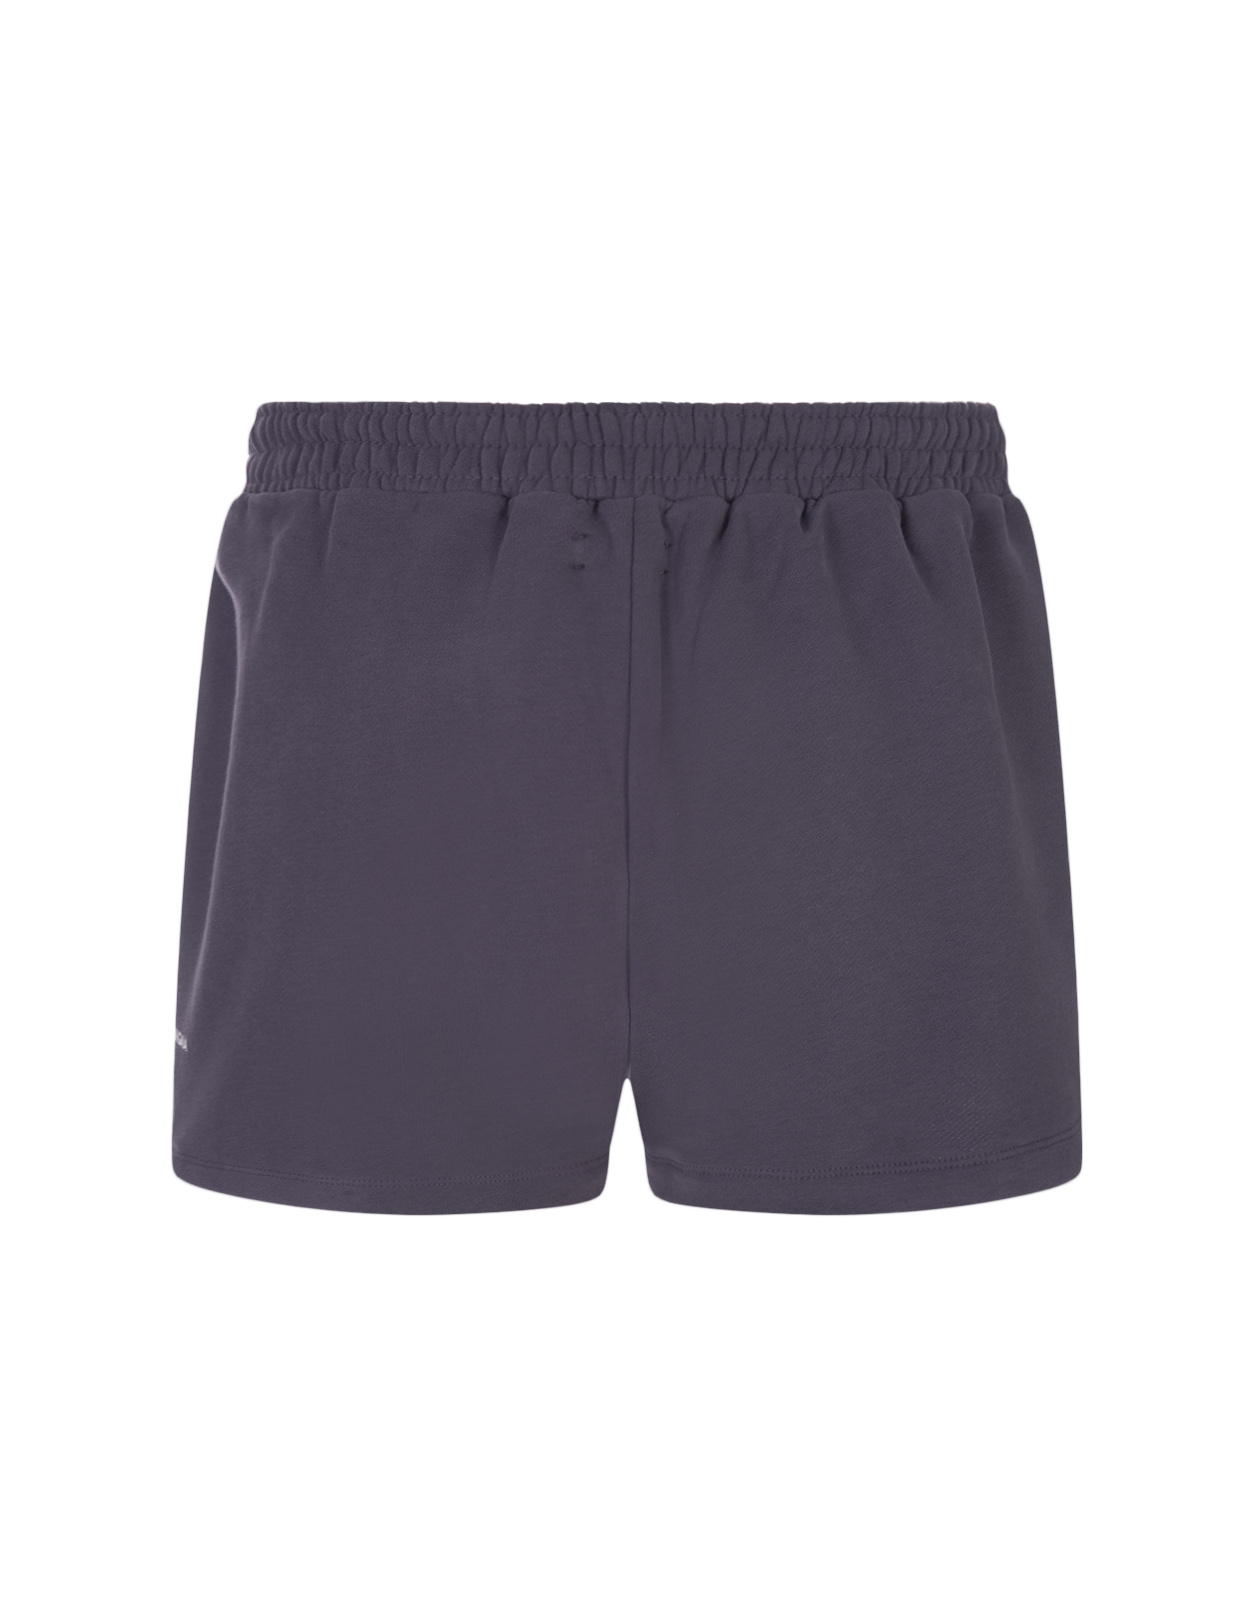 365 Core Shorts Slate Blue PANGAIA | 10000181SLATE BLUE